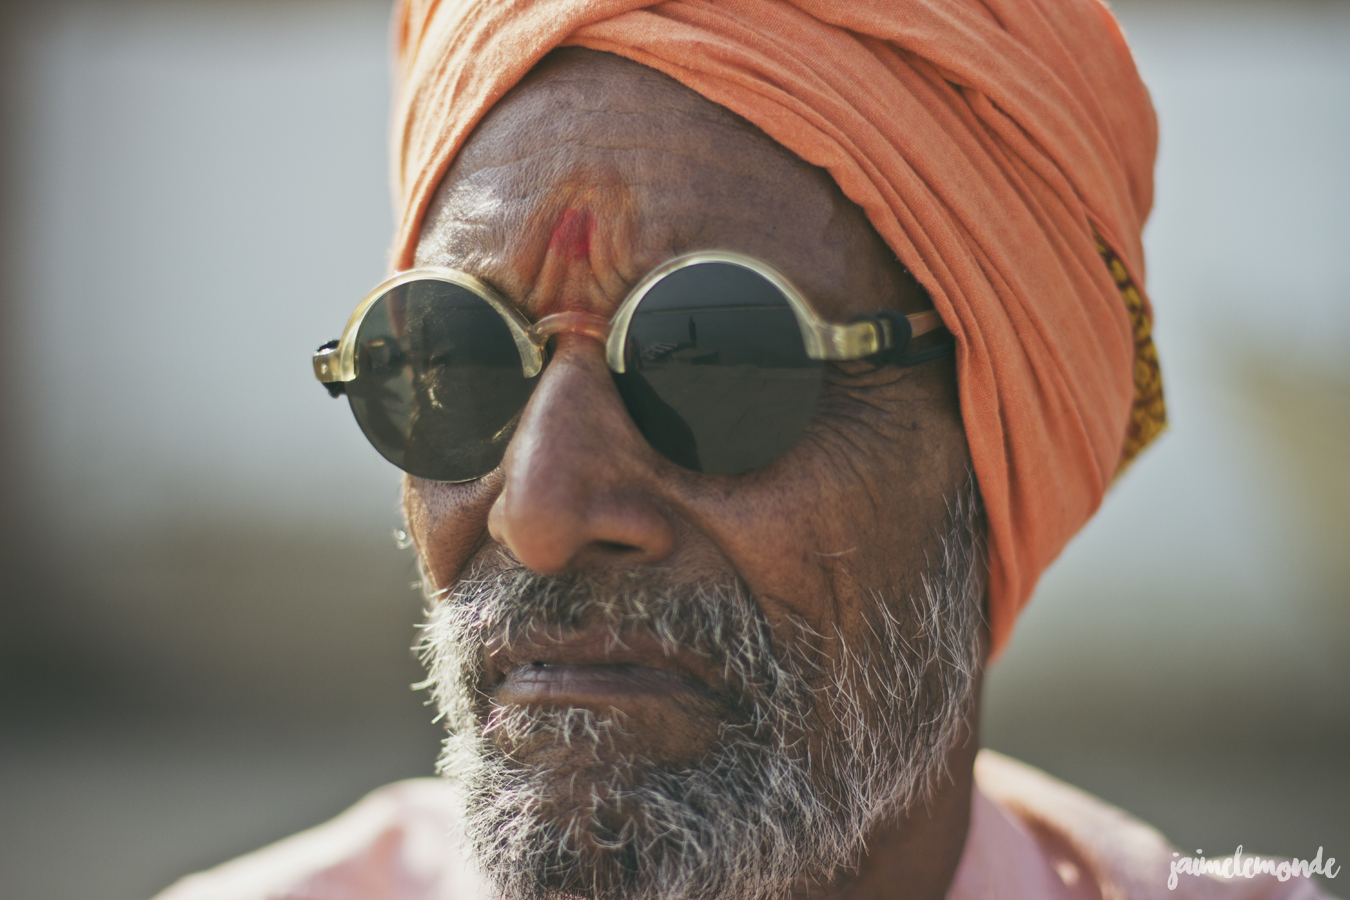 blog voyage - 33 portraits en Inde - ©jaimelemonde (28)